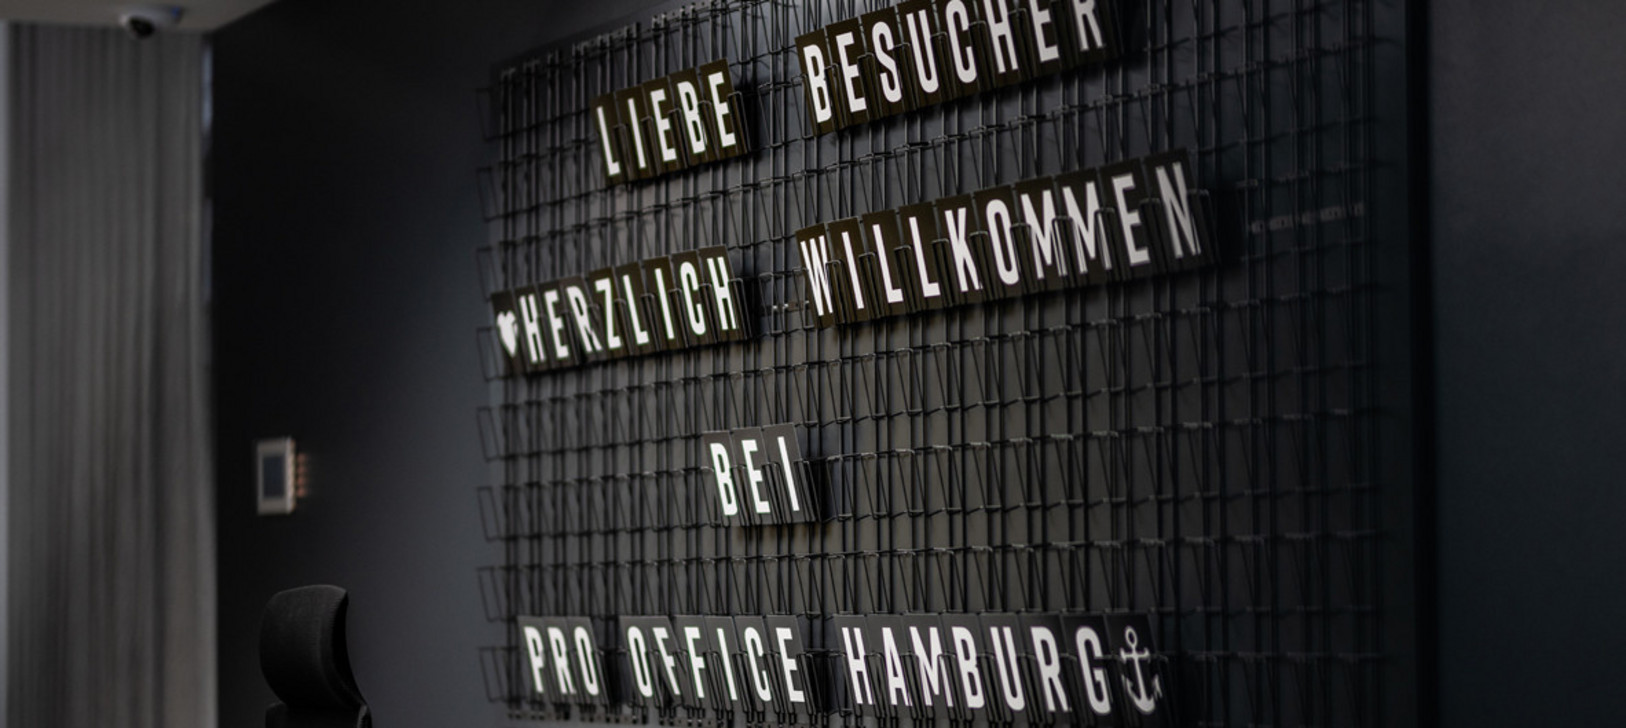 pro office Hamburg Ansichten Bild 01